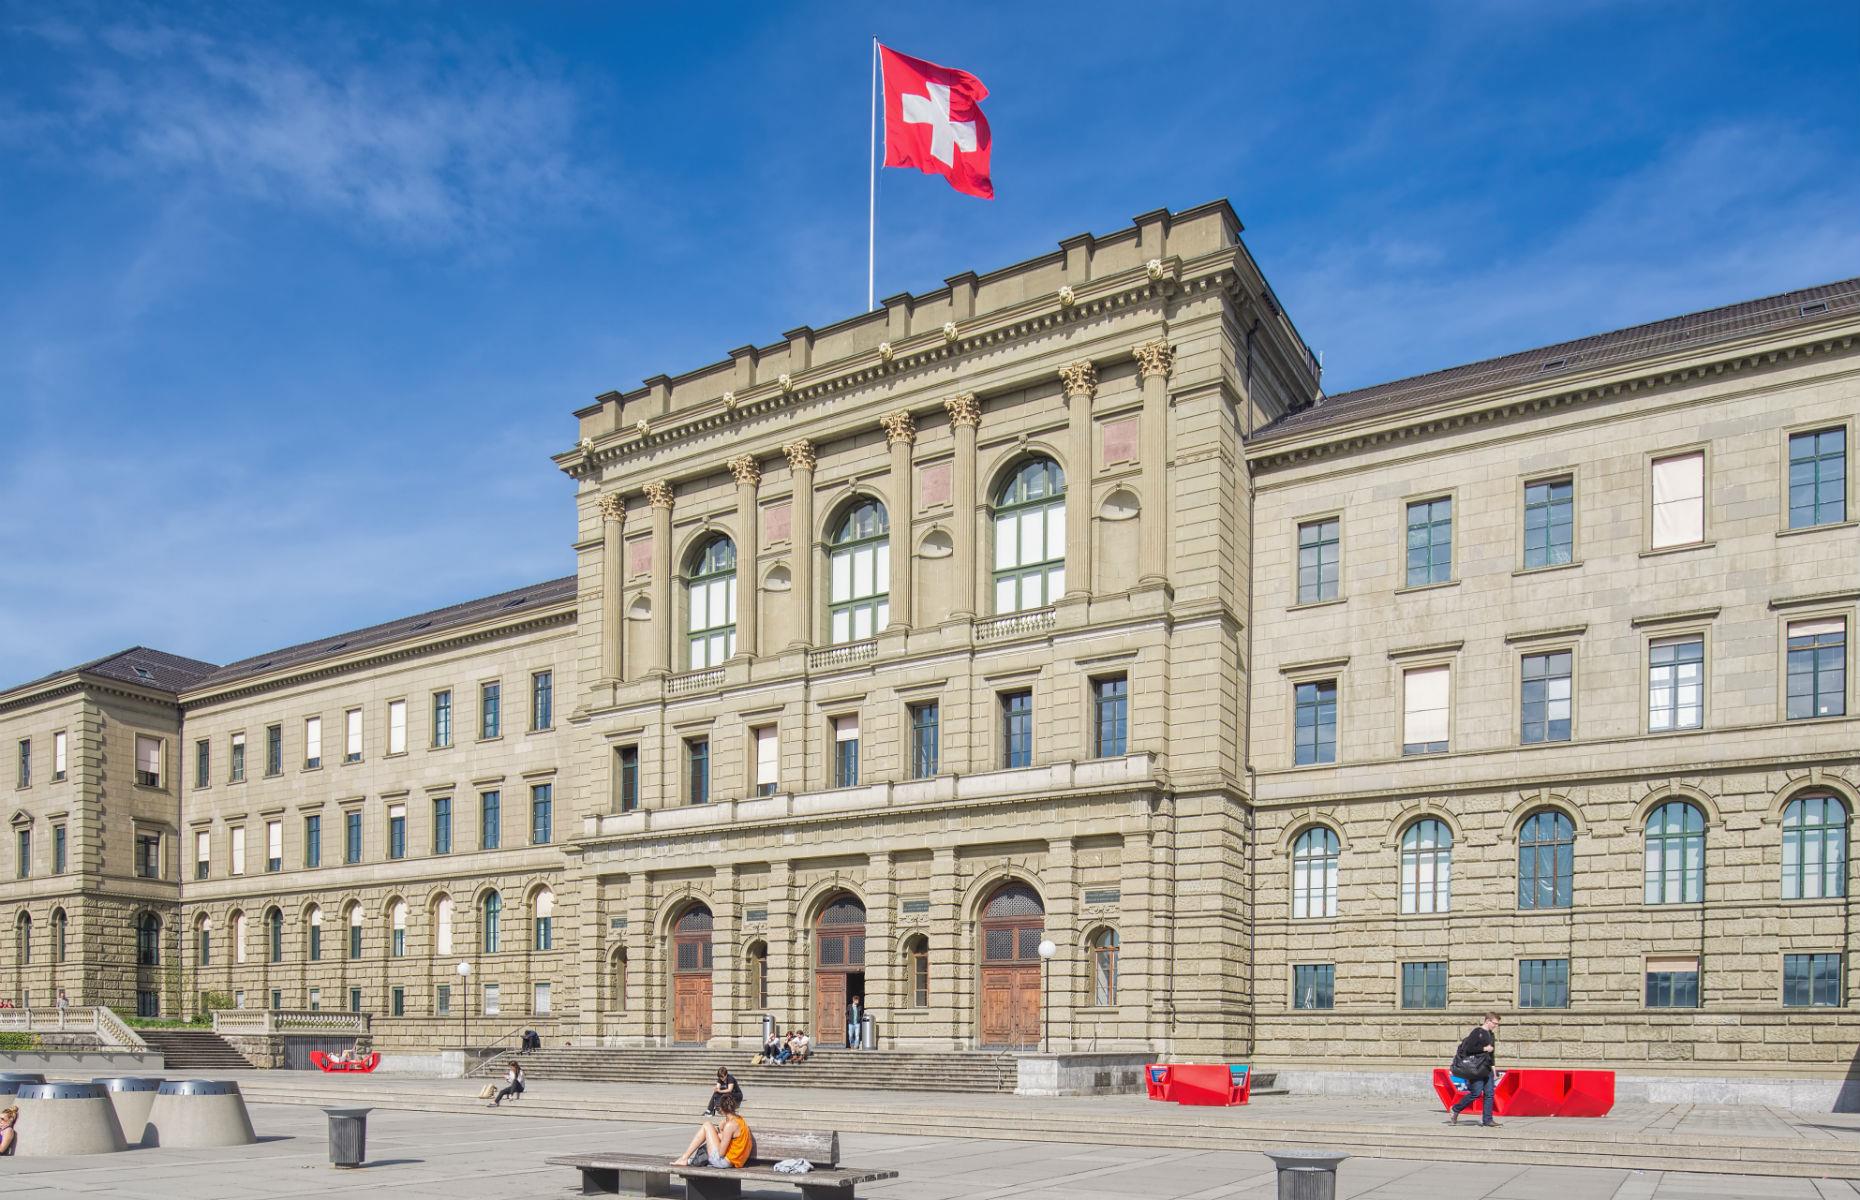 19th – ETH Zurich – Swiss Federal Institute of Technology Zurich, Switzerland 